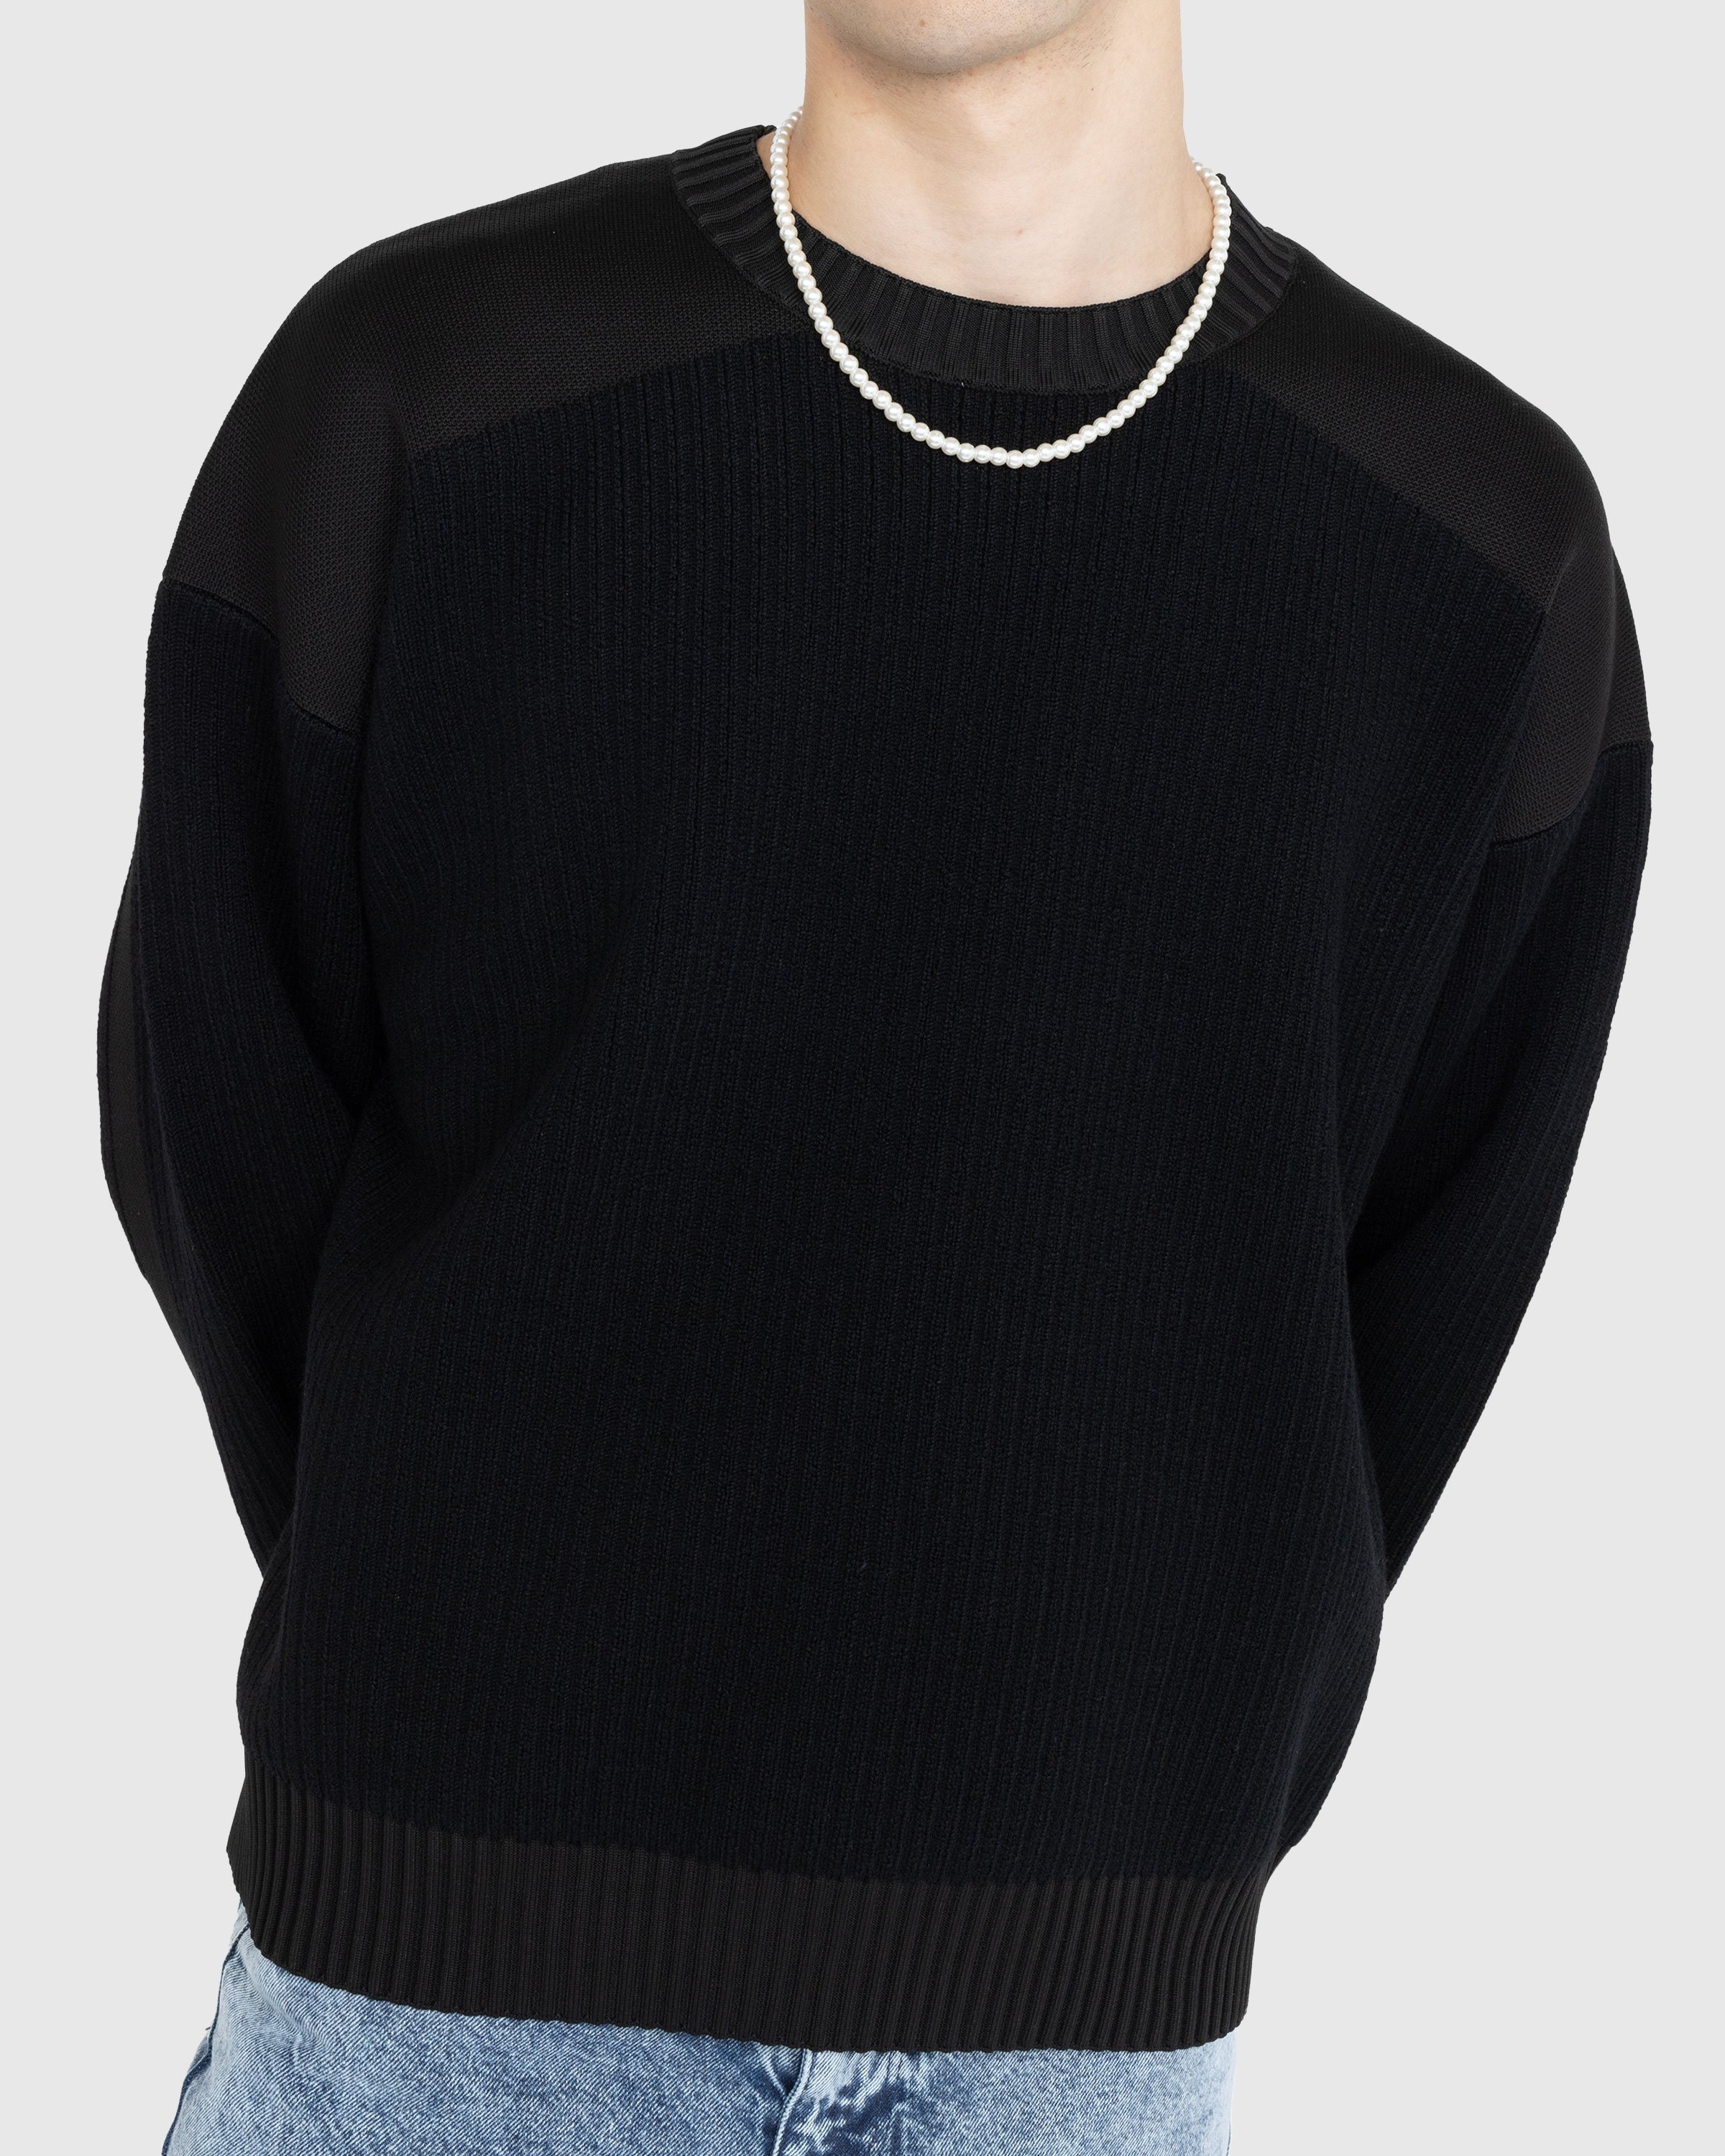 Y-3 – Utility Crewneck Sweater Black | Highsnobiety Shop